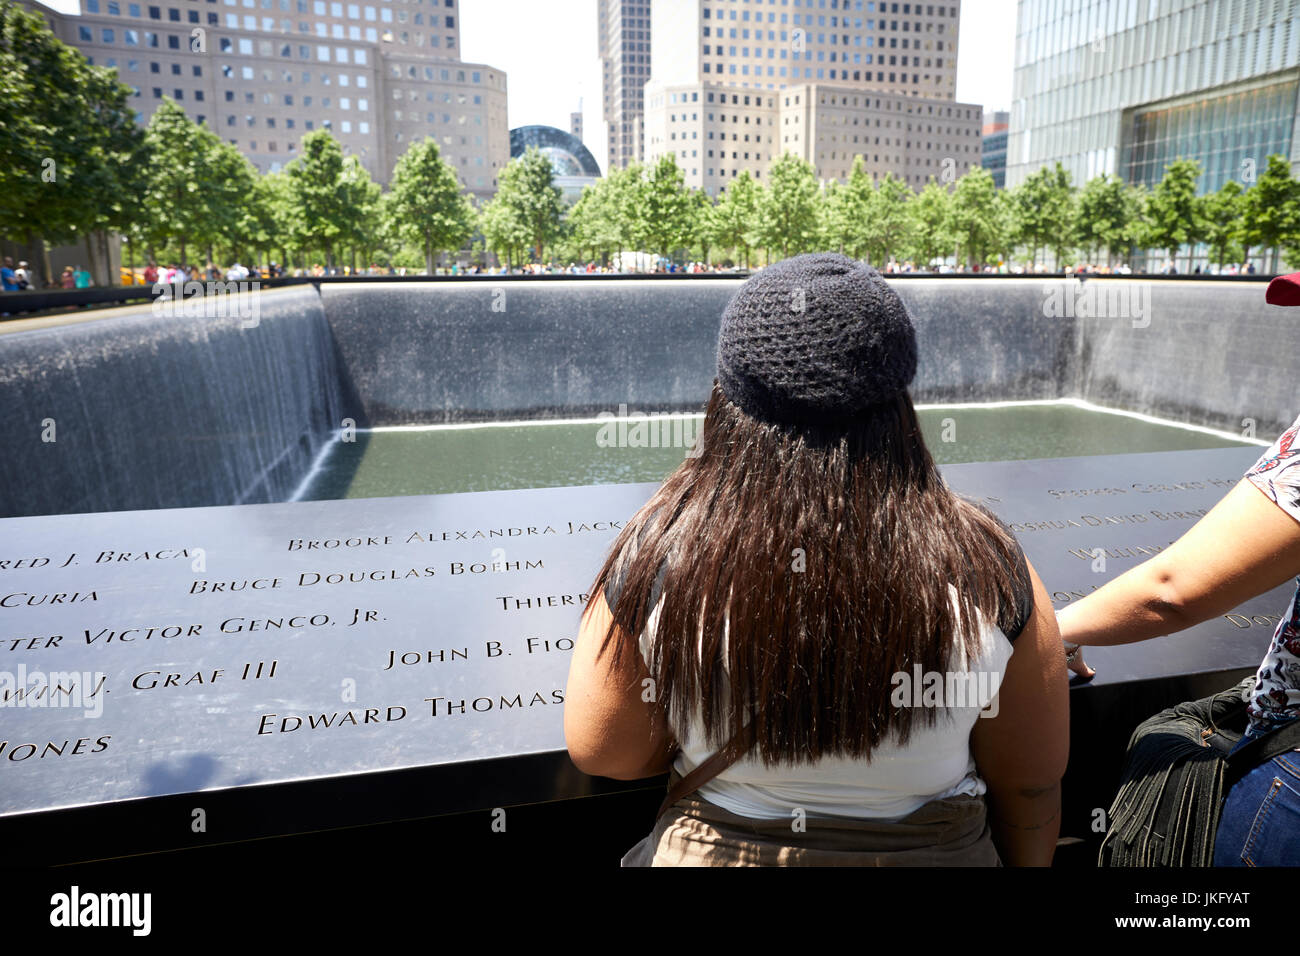 La ville de New York, Manhattan, 11 septembre National Memorial & Museum, fontaines commémoratif du 11 septembre Banque D'Images